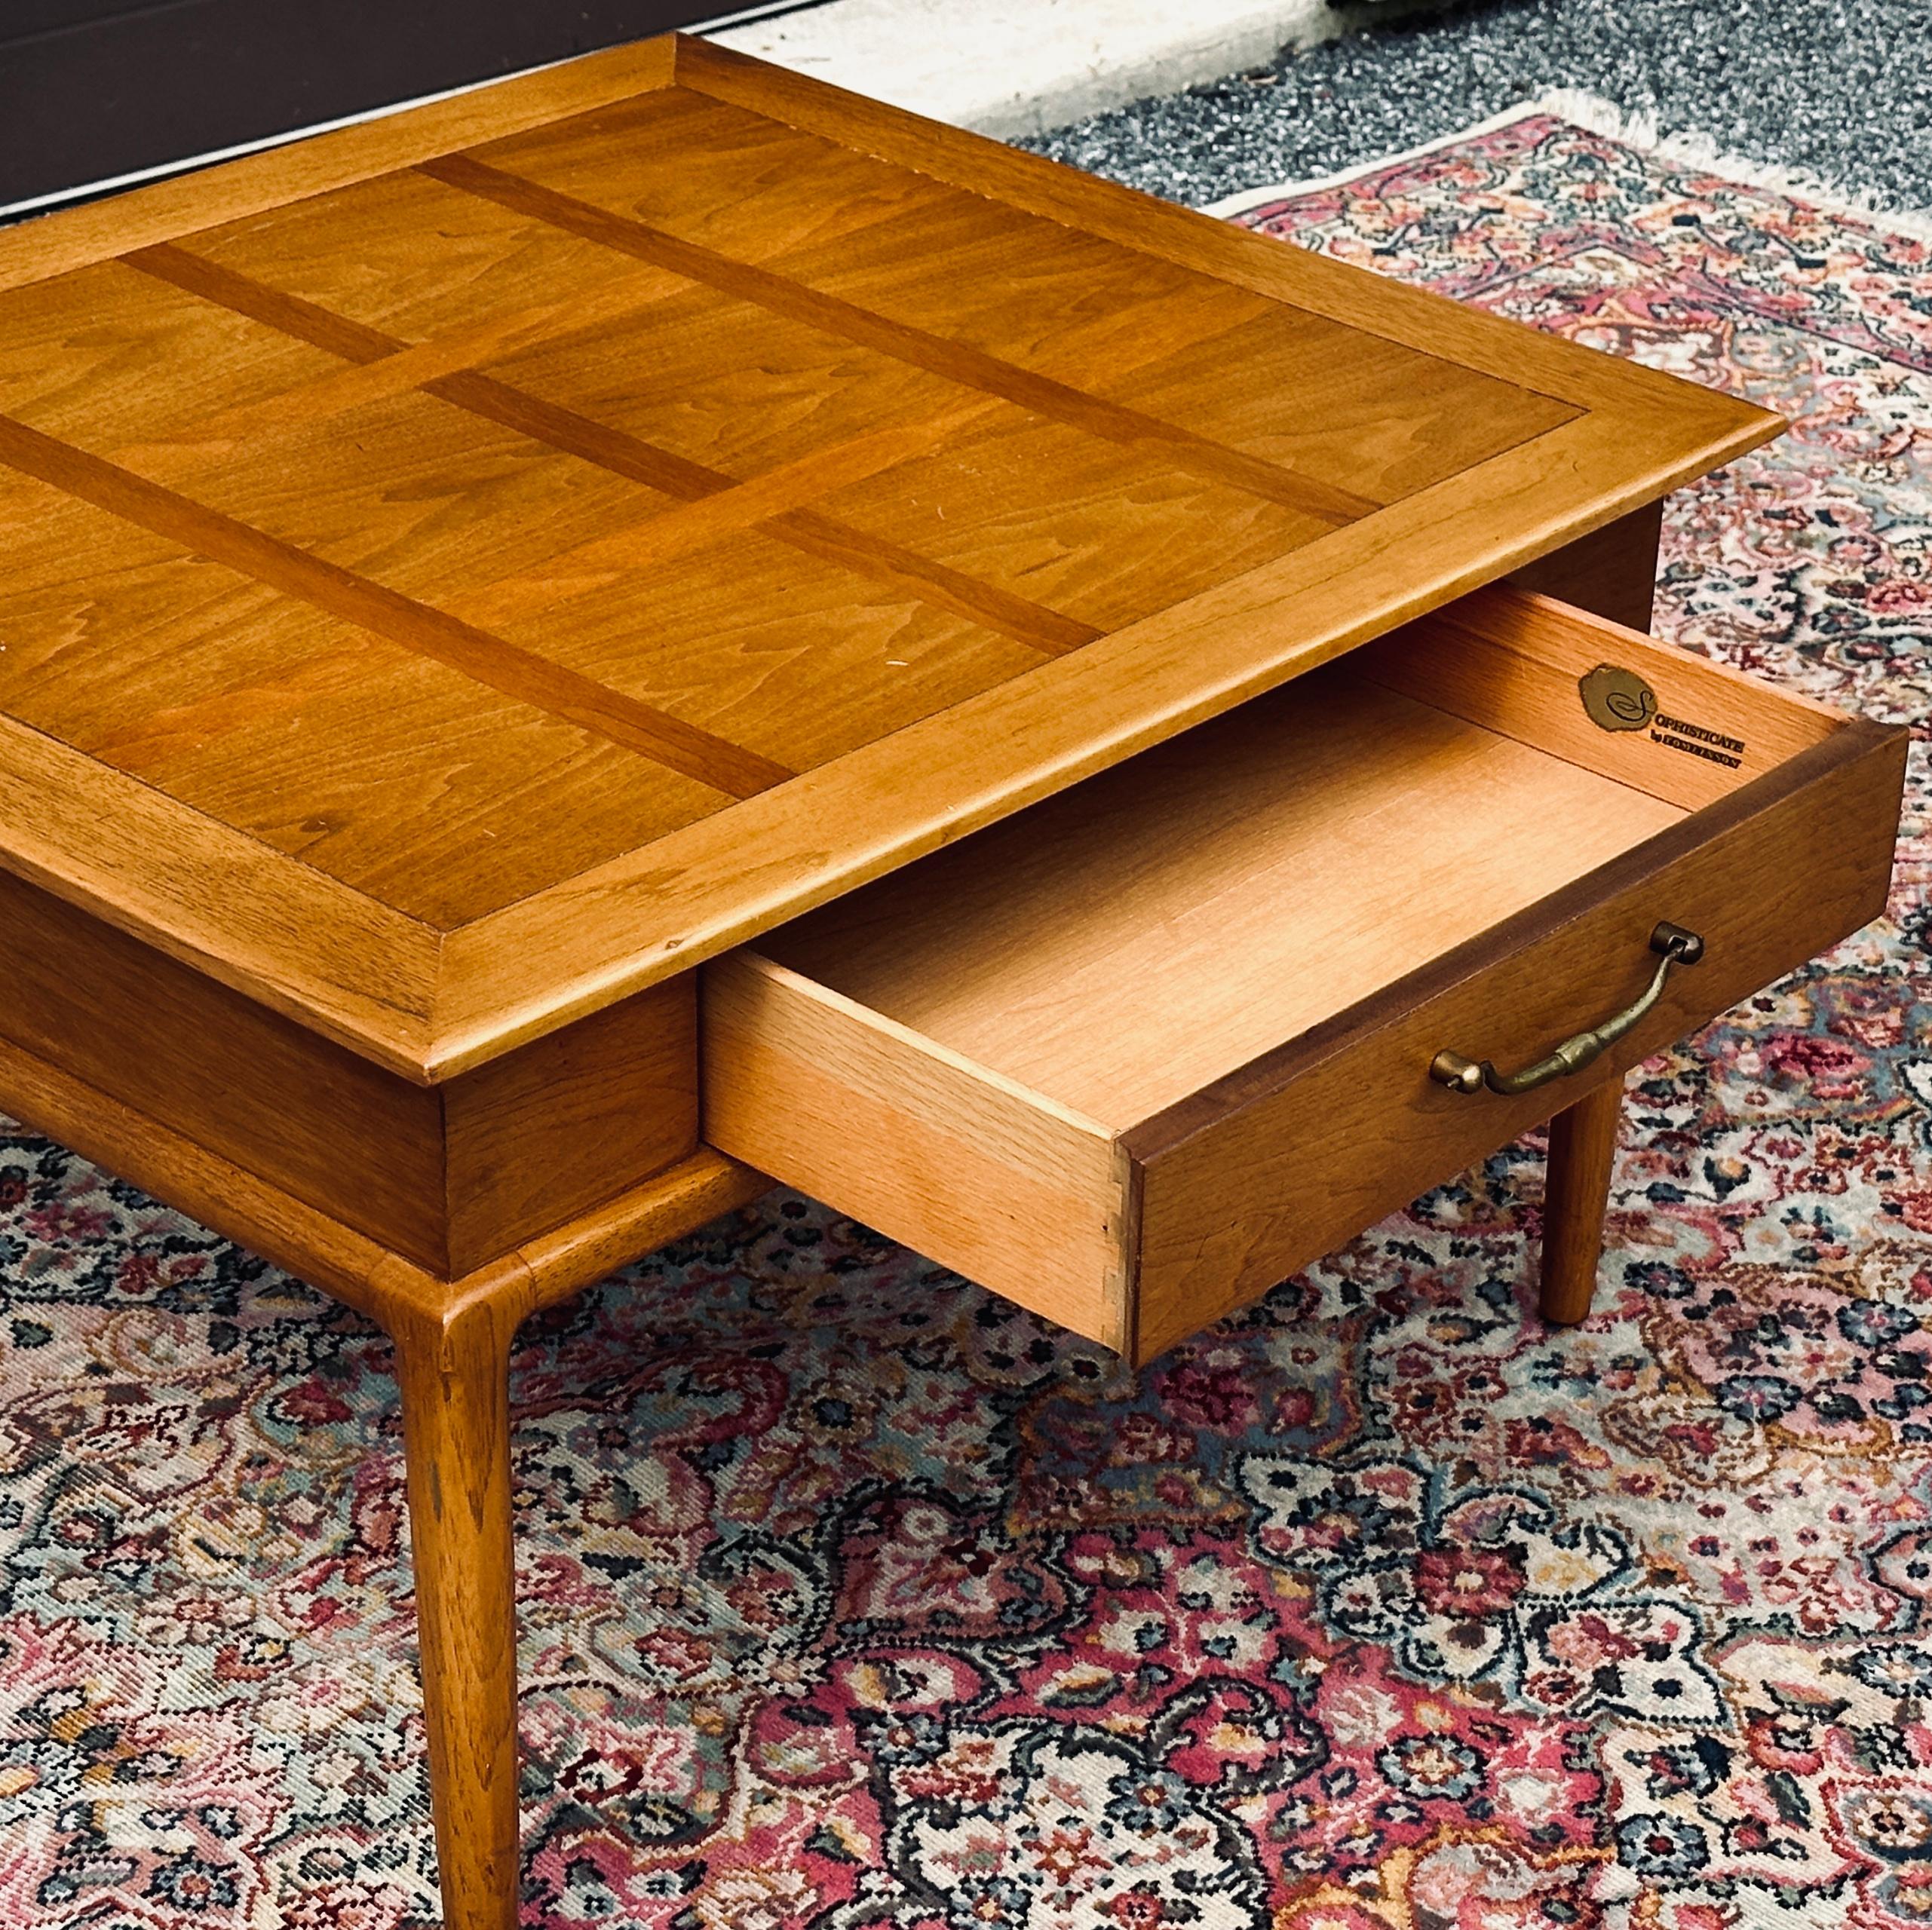 Table d'appoint avec un seul tiroir et de grosses ferrures en laiton, conçue par John Lubberts et Lambert Mulder pour la ligne 